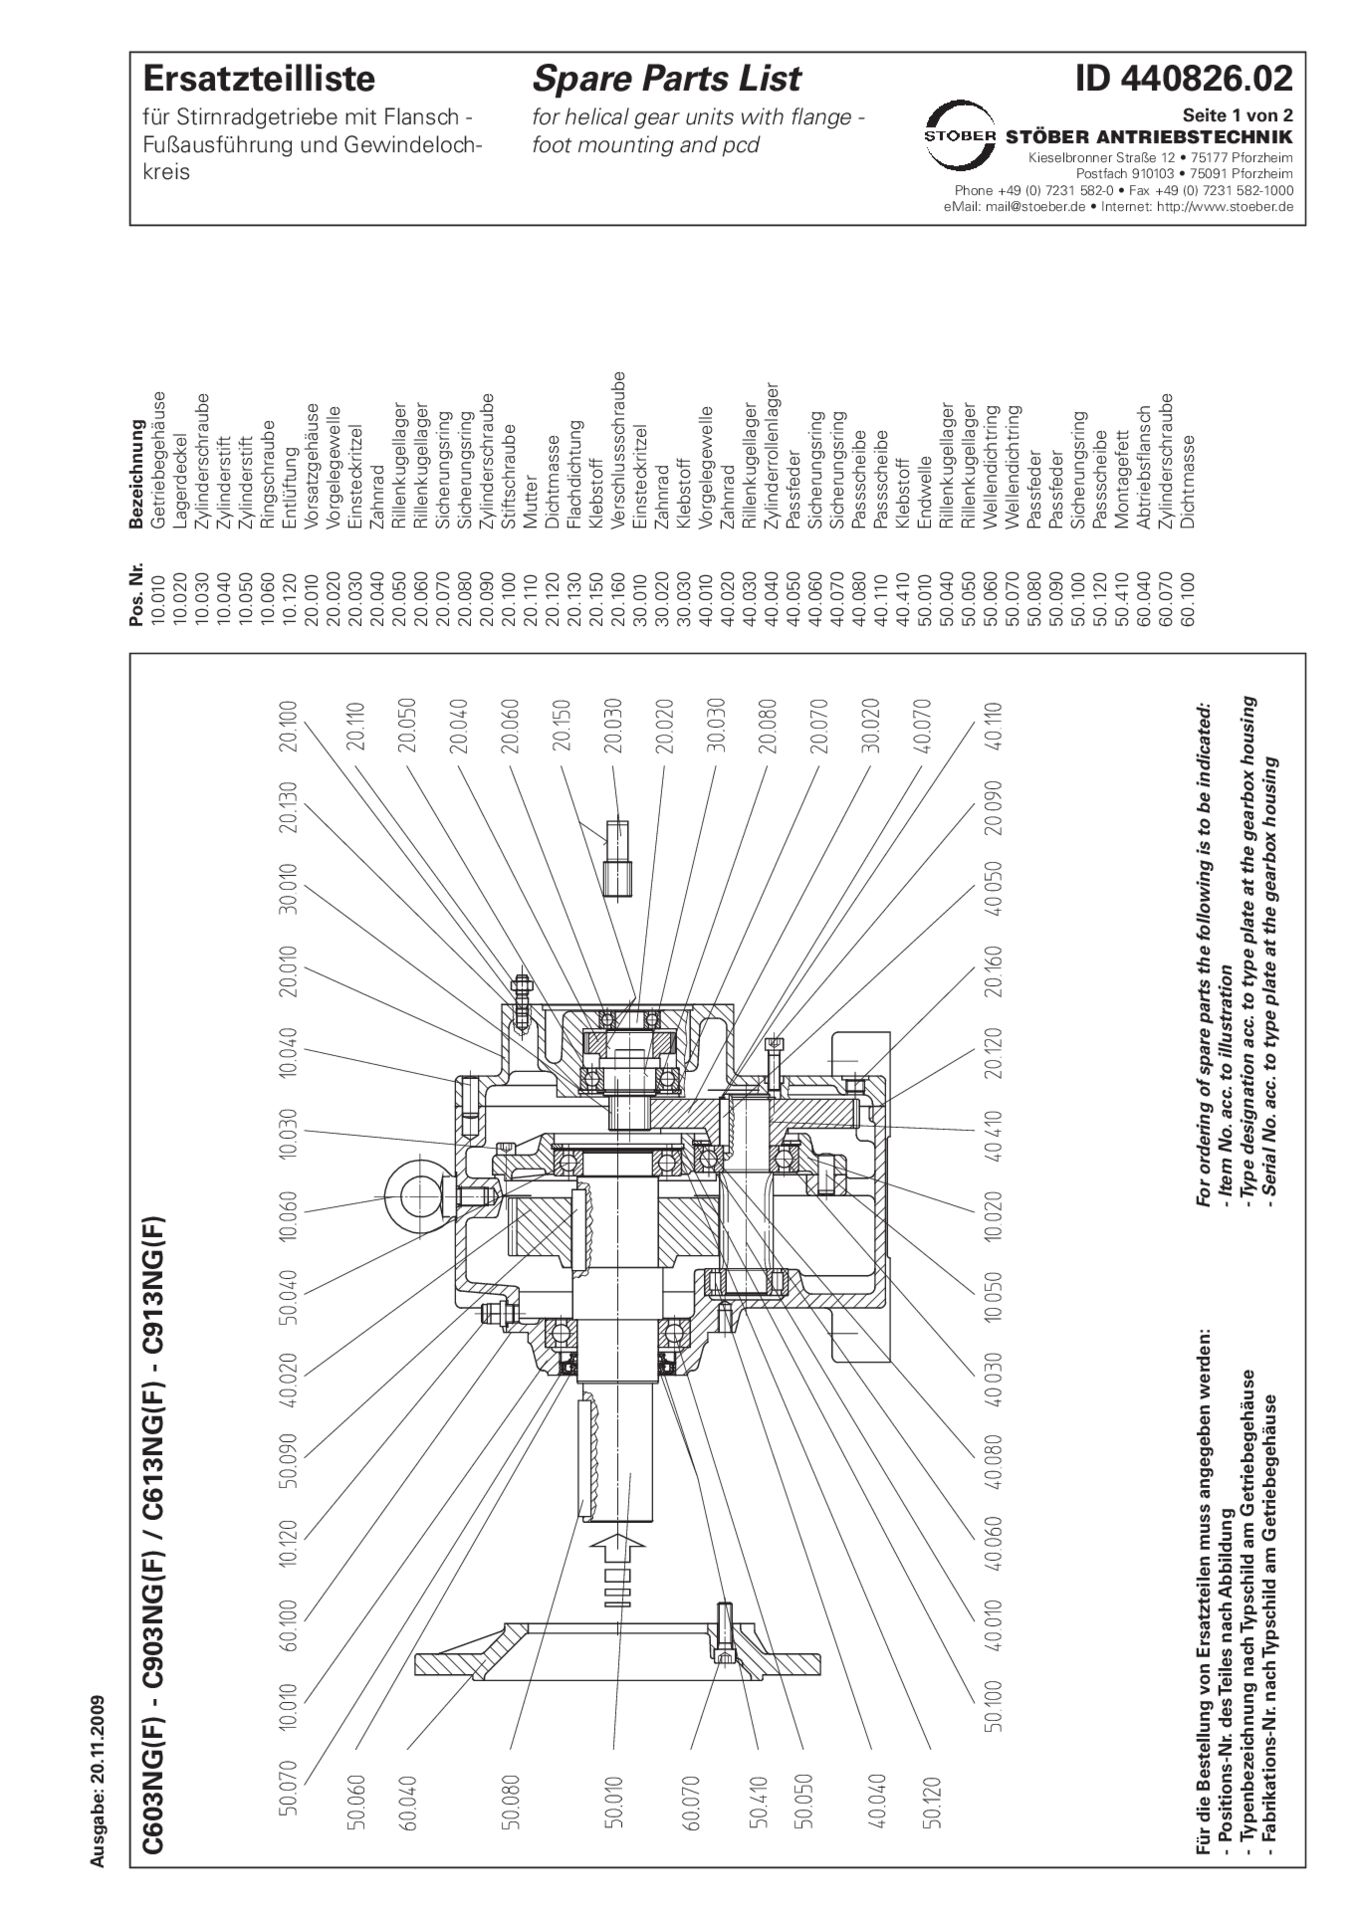 Ersatzteilliste Stirnradgetriebe C603 C613 C703 C713 C803 C813 C903 C913 NG NFReplacement parts list helical gear units C603 C613 C703 C713 C803 C813 C903 C913 NG NF